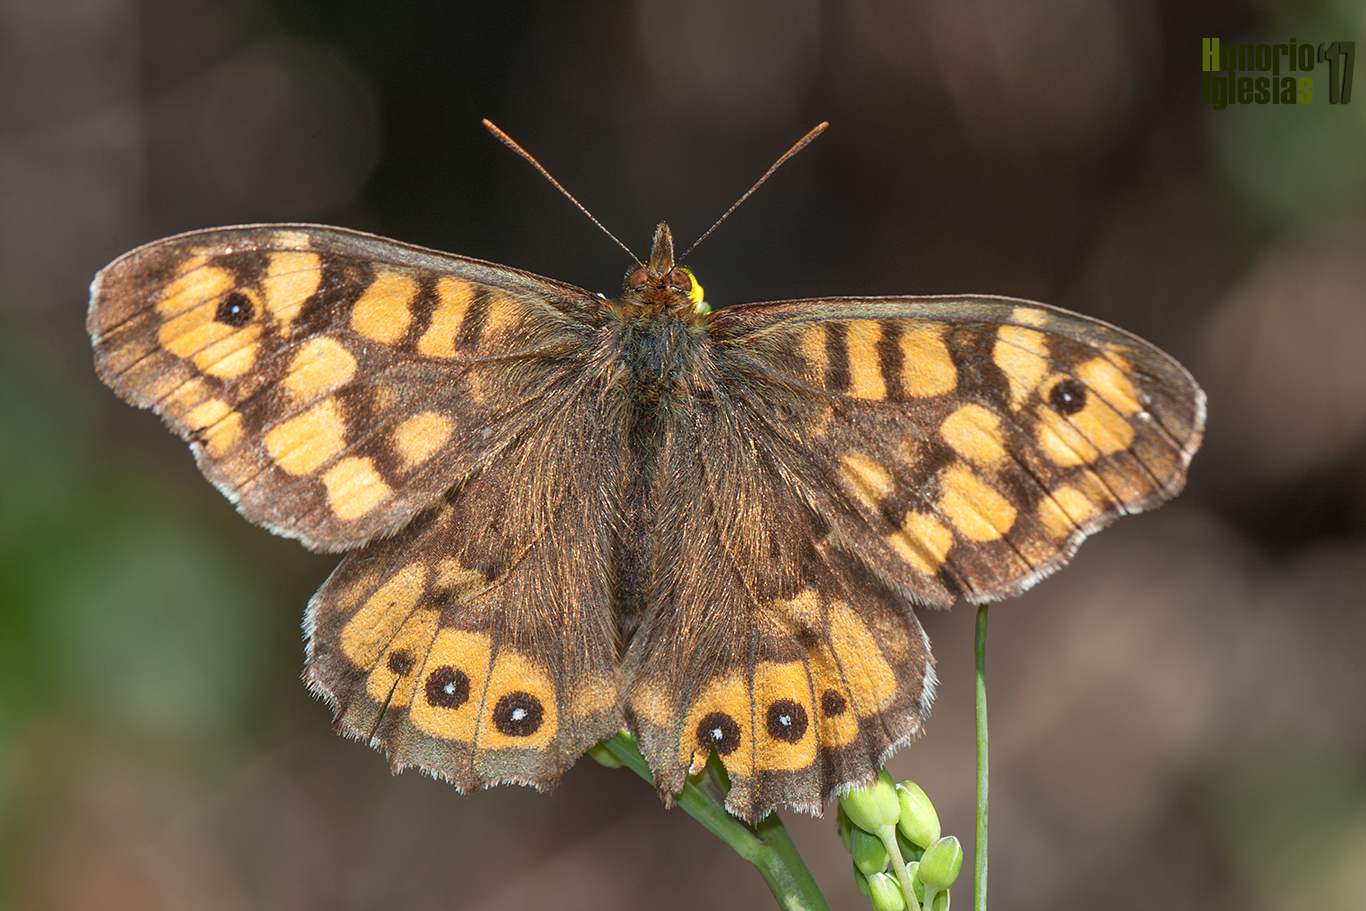 Macho de mariposa ondulada o maculada (Pararge aegeria) mostrando su anverso alar. Se trata de una mariposa muy común en la sierra de Guadarrama